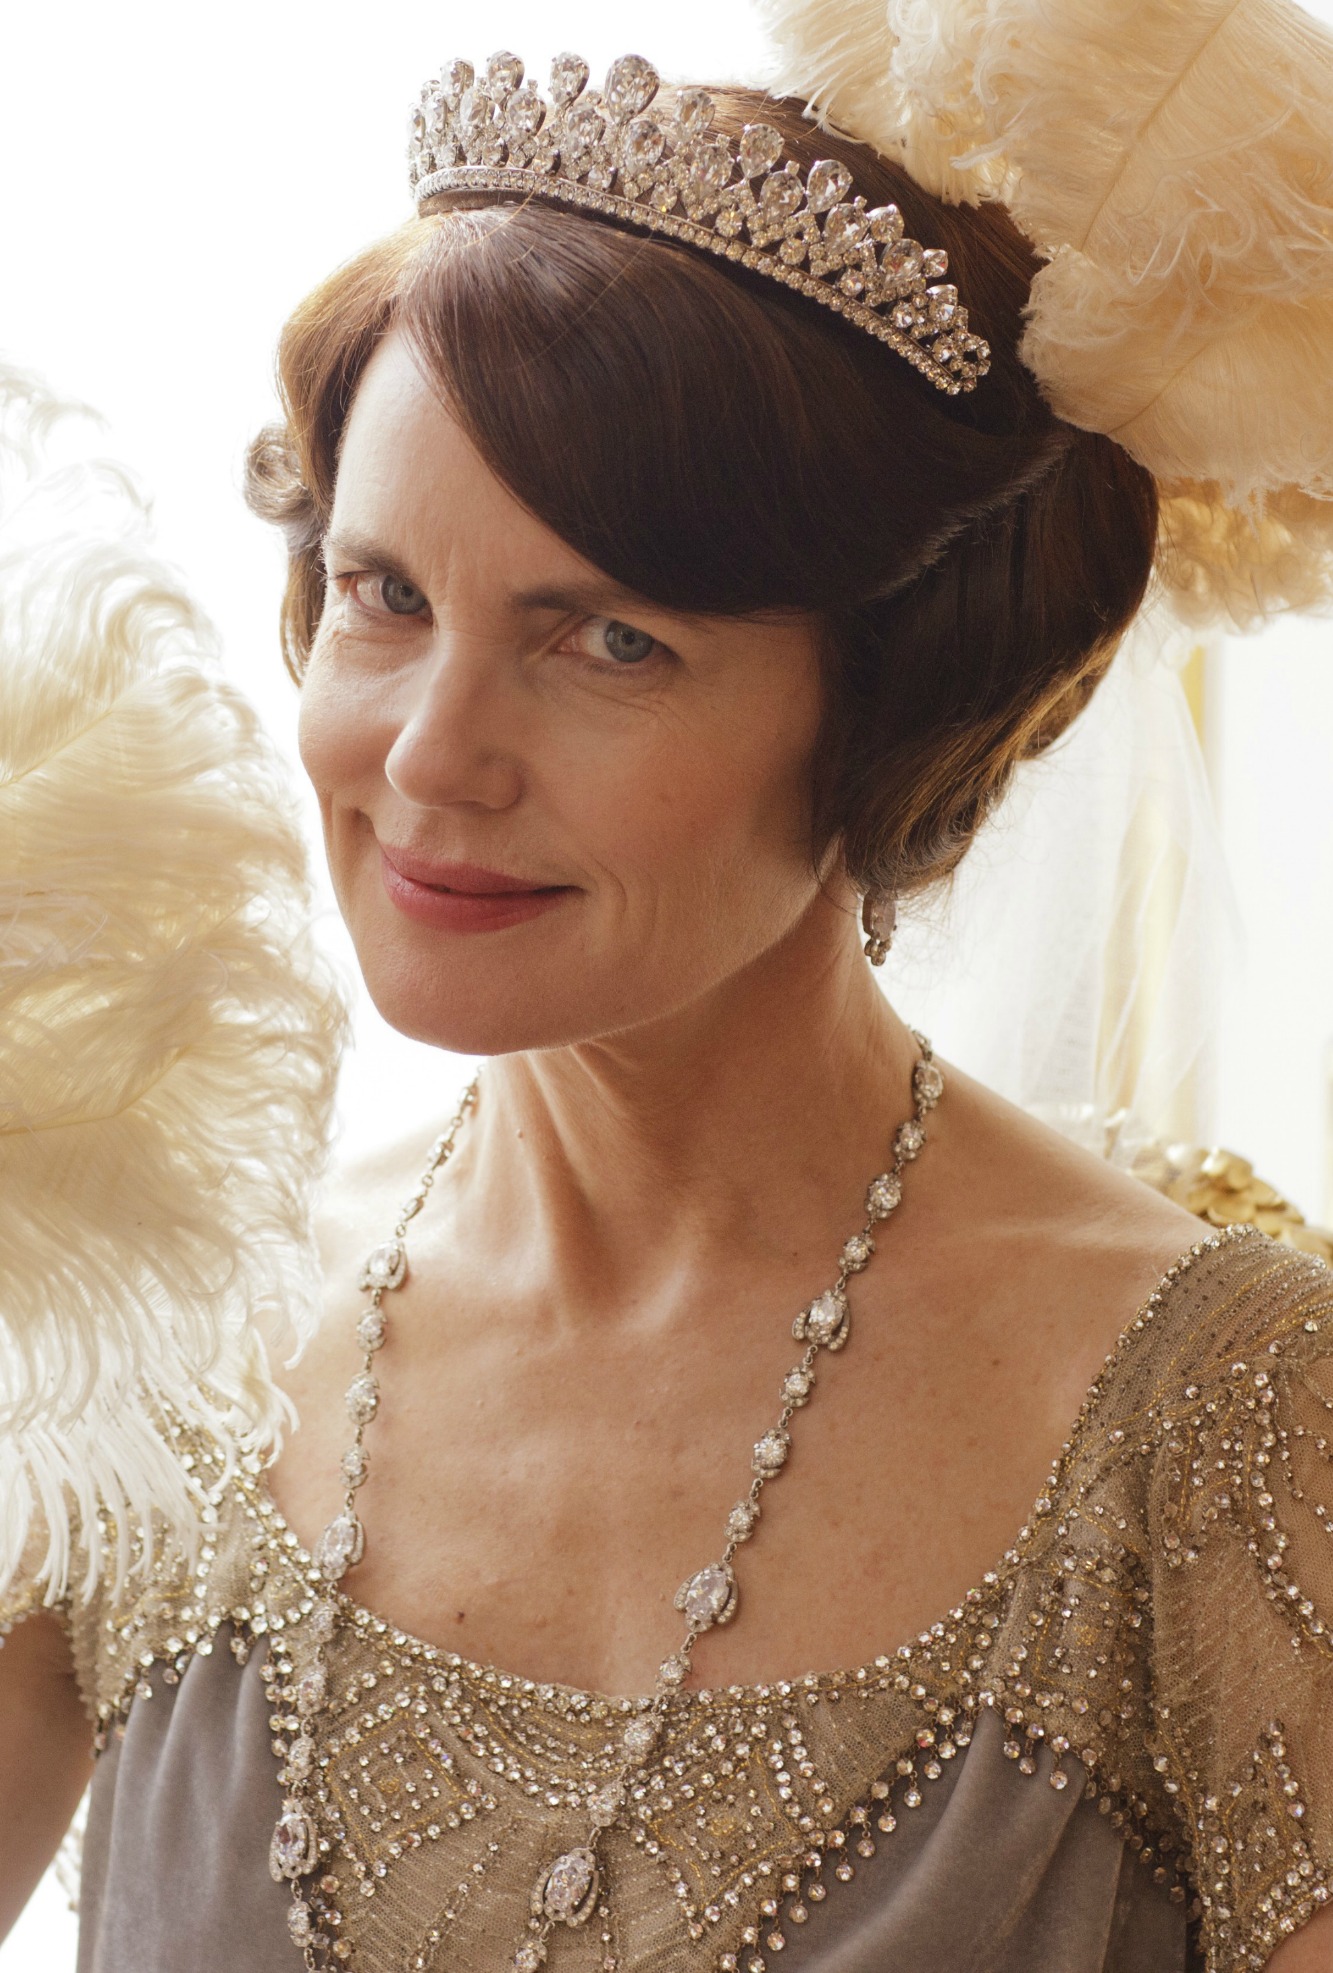 Cora Crawley | Downton Abbey Wiki | FANDOM powered by Wikia